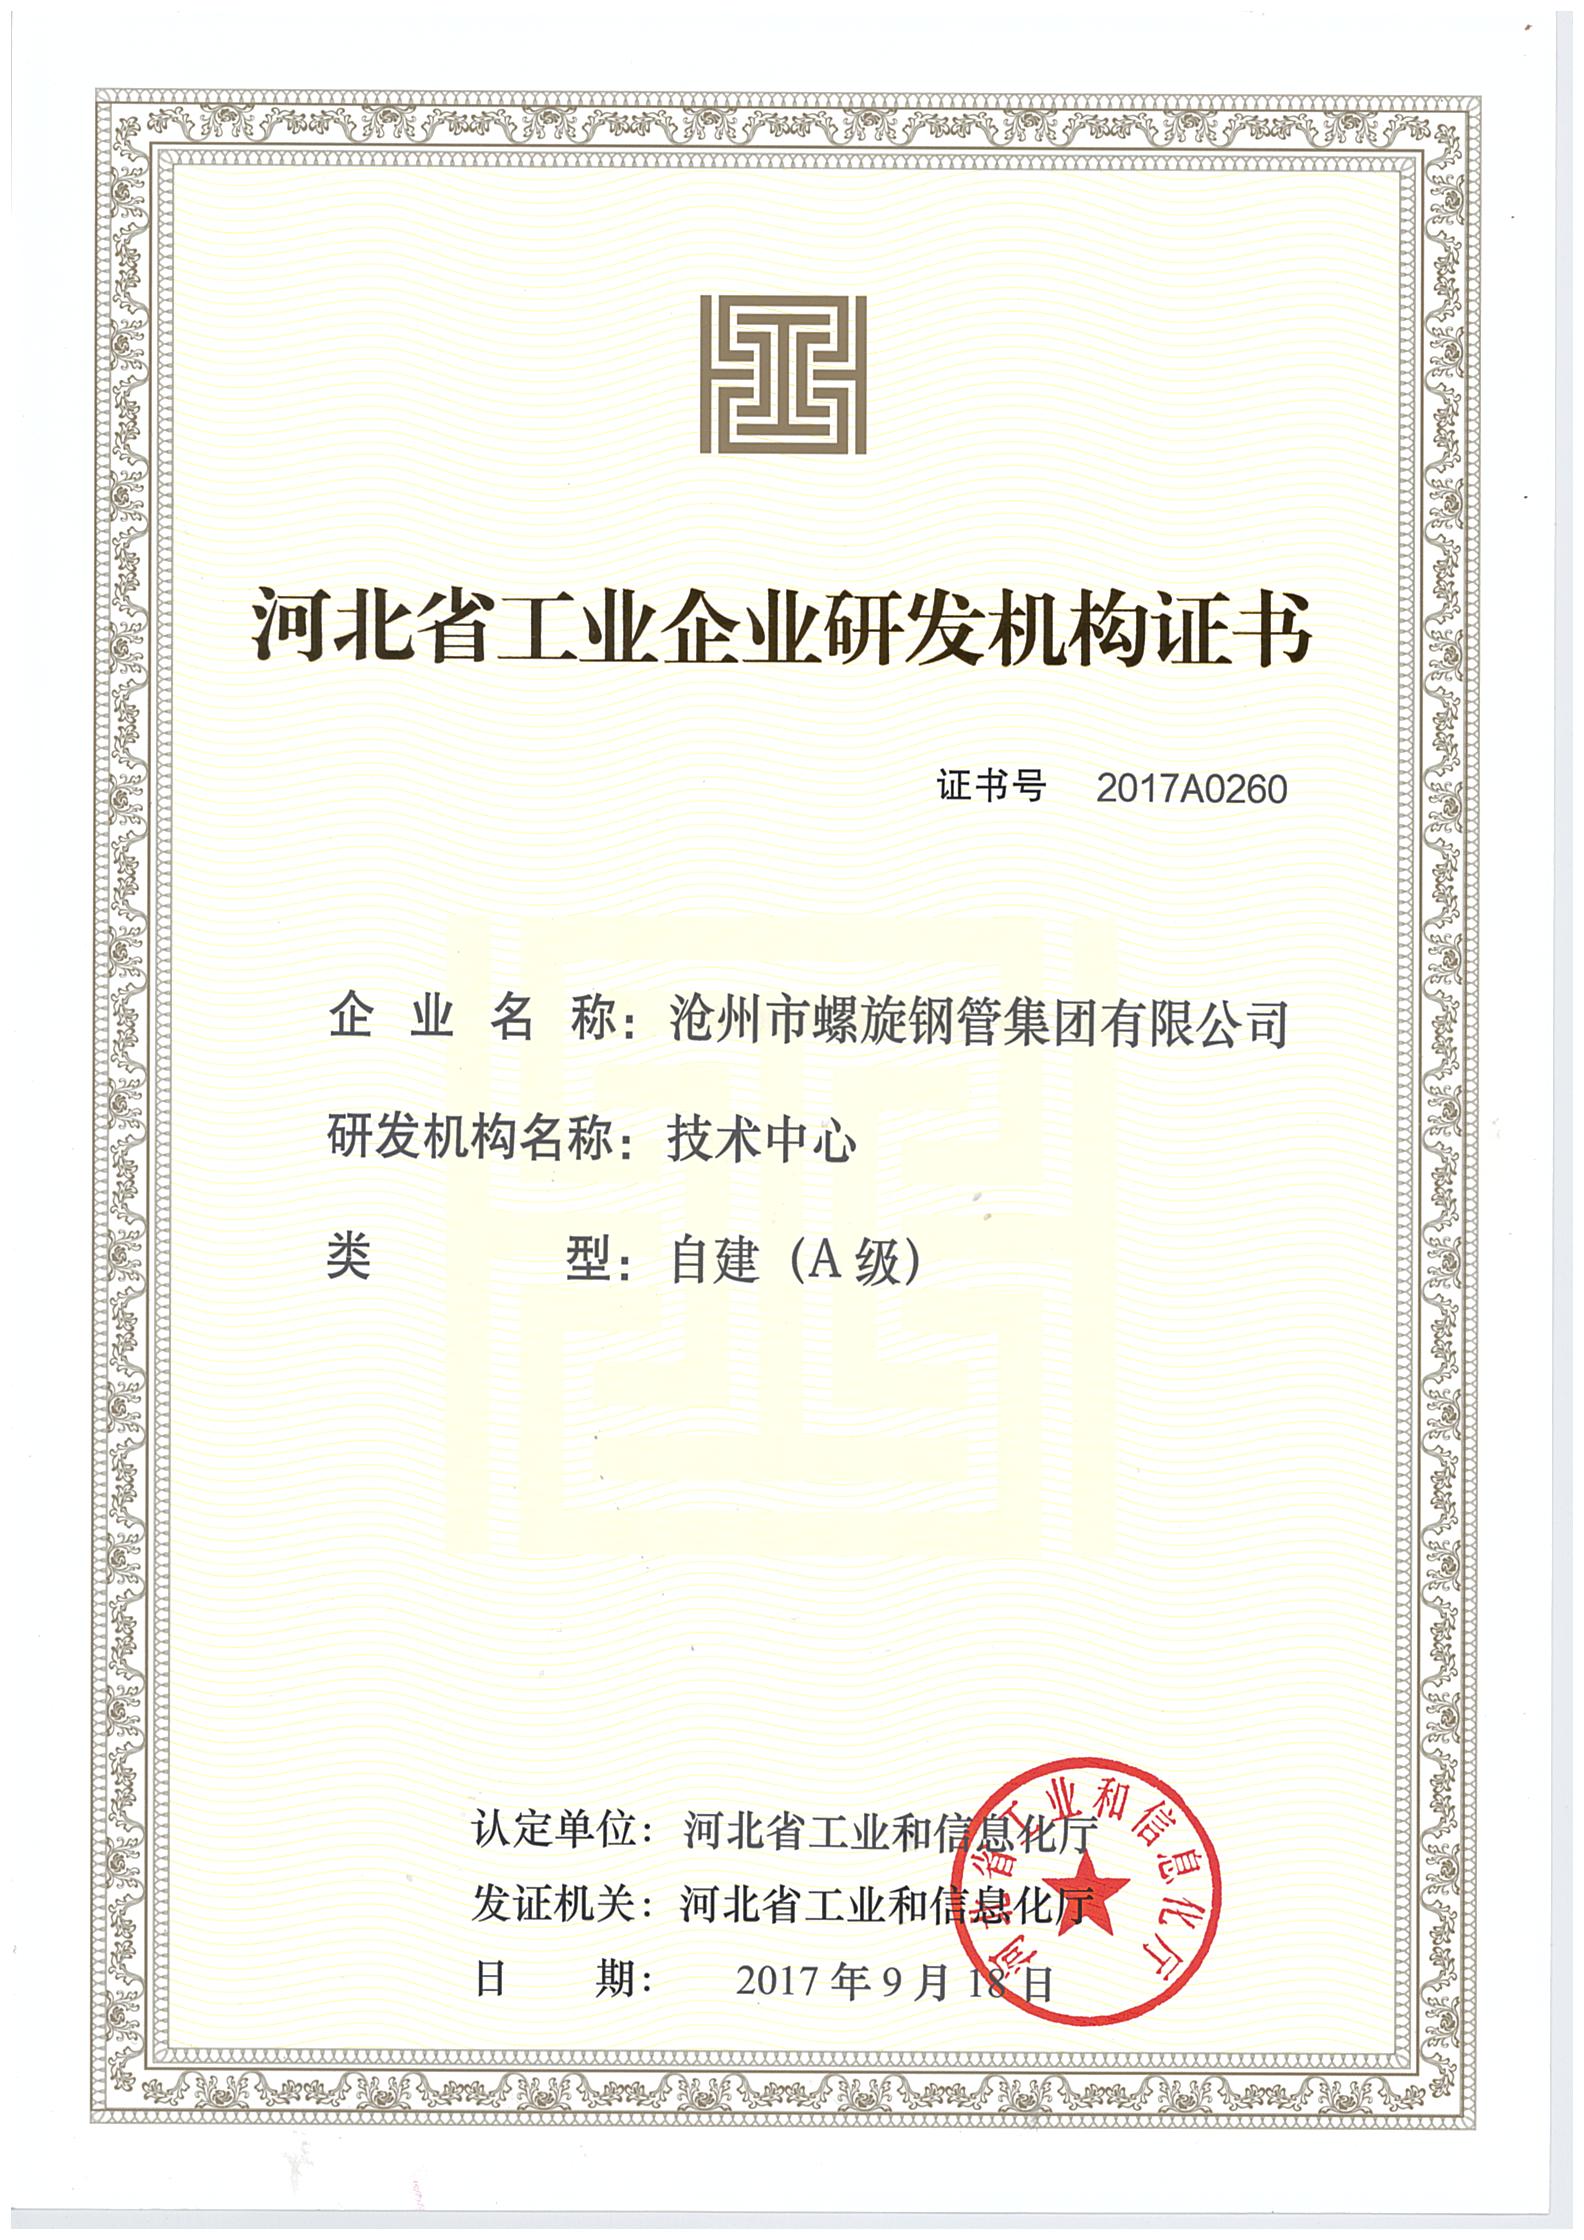 四川省工业企业研发机构证书